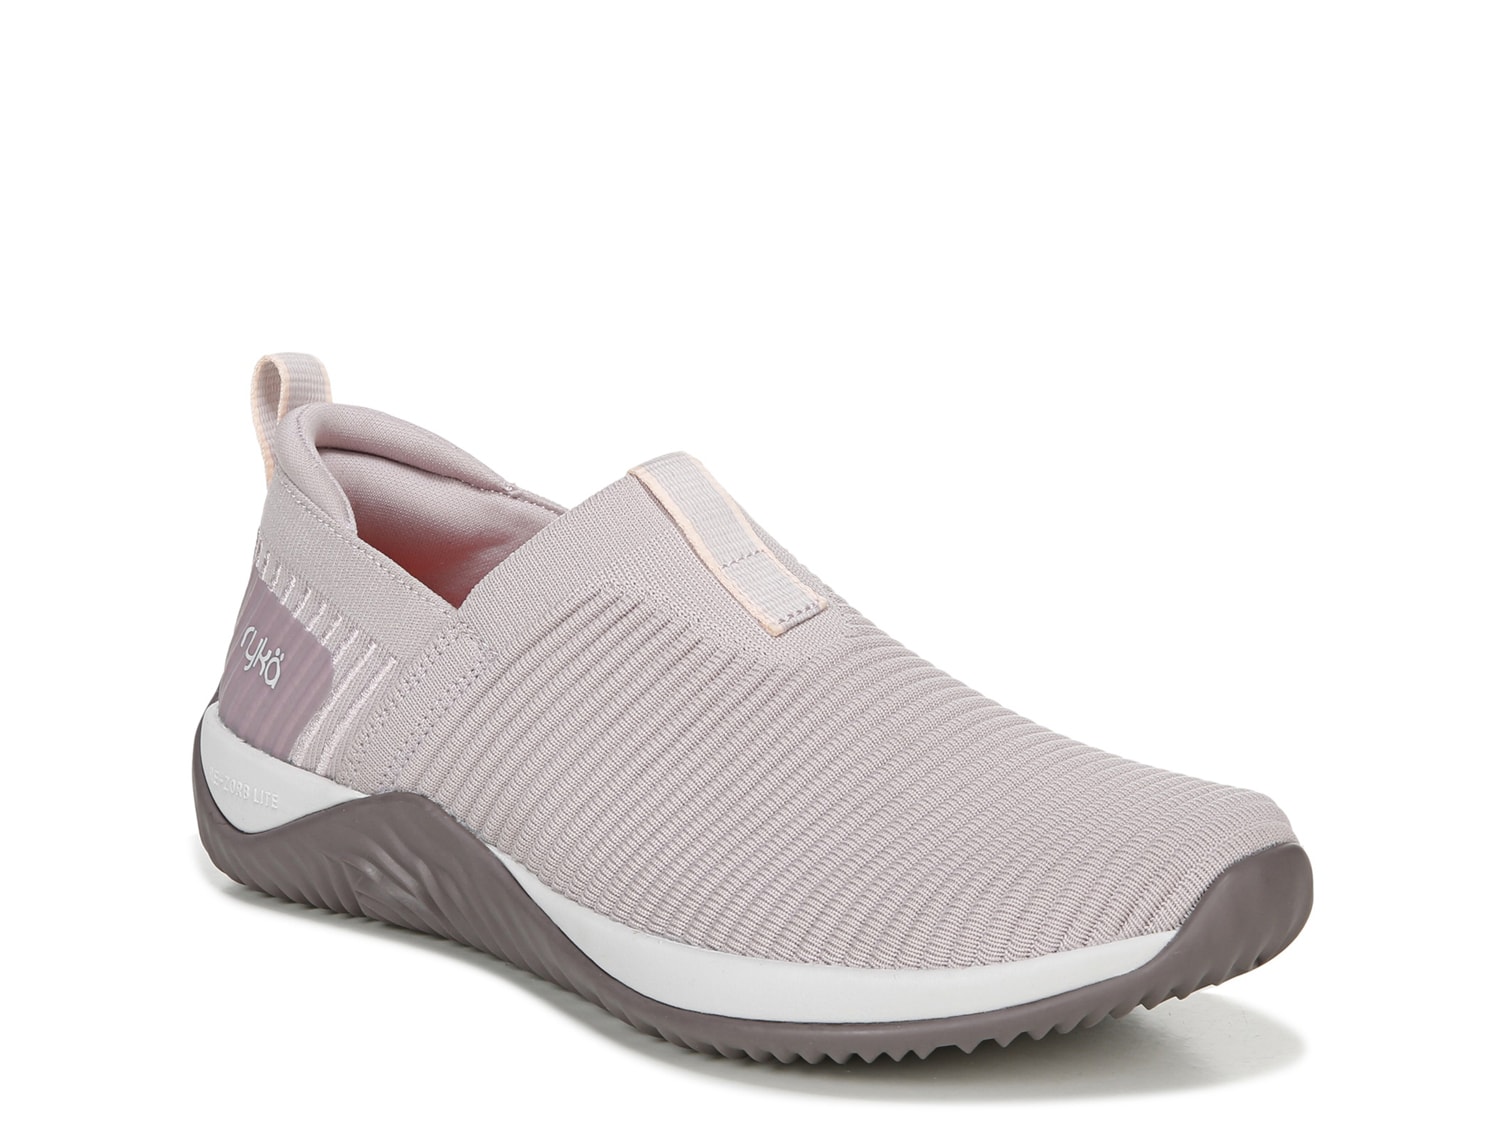 Ryka Echo Knit Slip-On Sneaker - Women's - Free Shipping